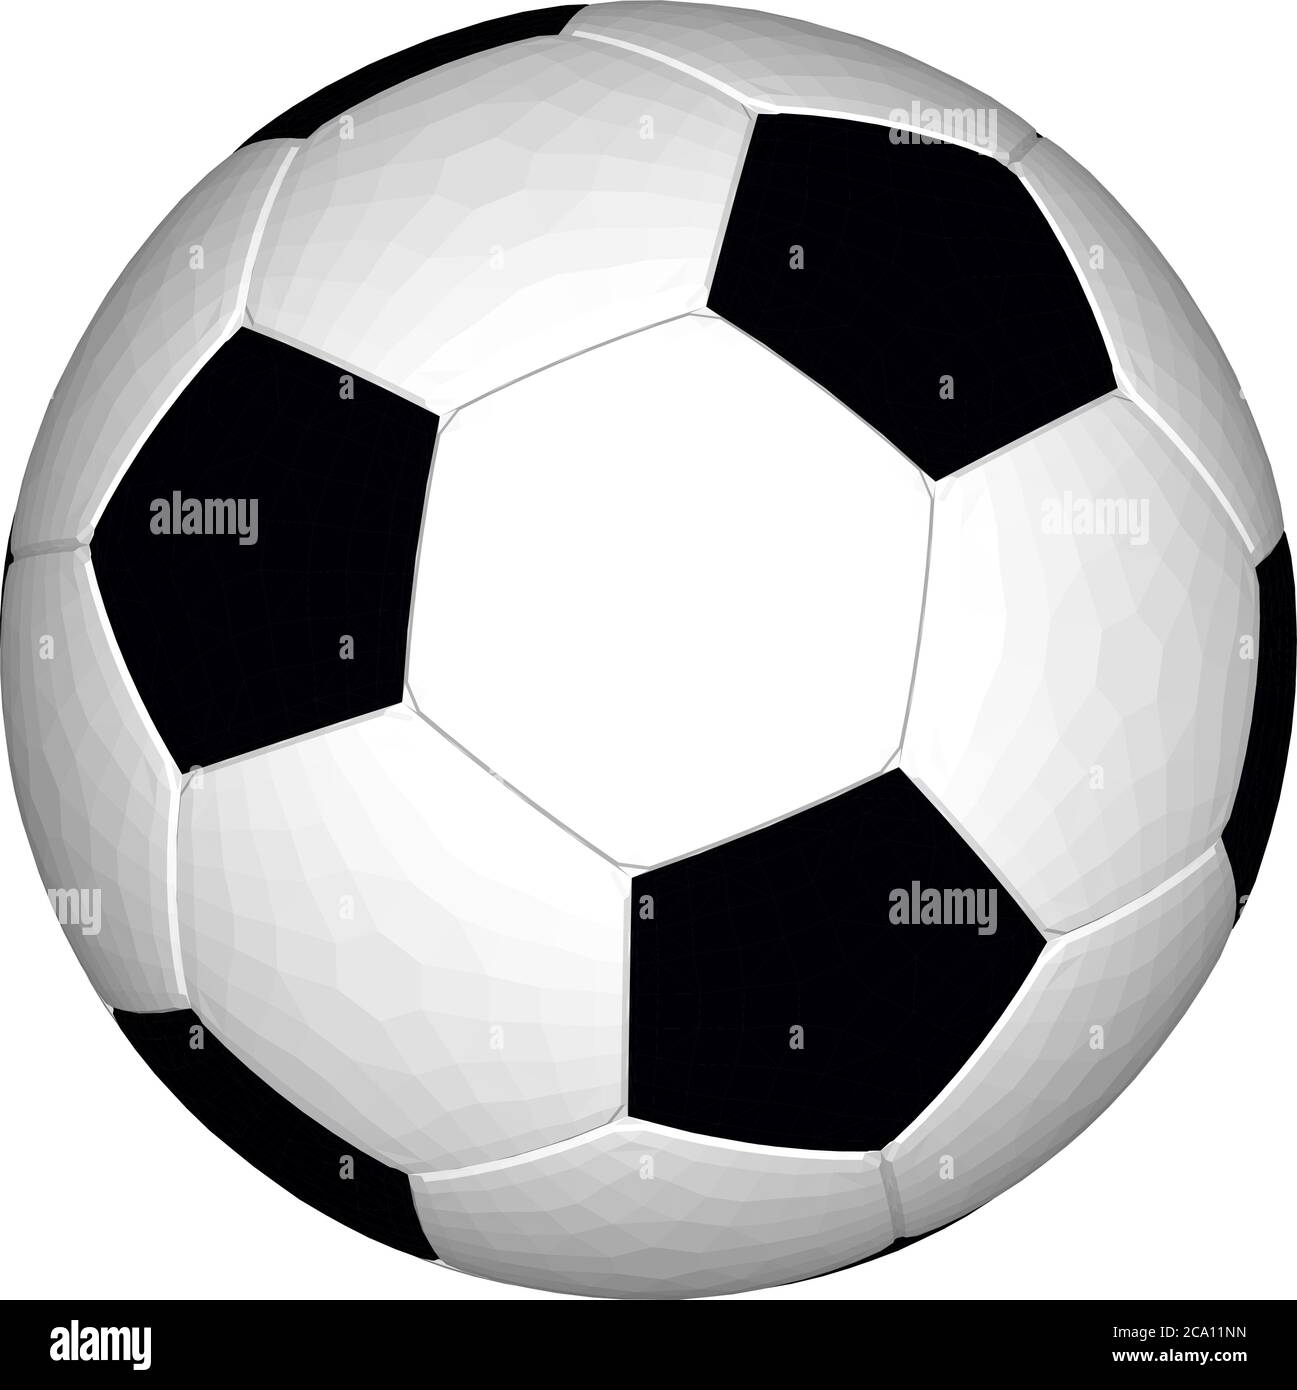 Pallone da calcio, tradizionali colori bianco e nero. Illustrazione del vettore di calcio. Icona a forma di foot ball. Illustrazione Vettoriale